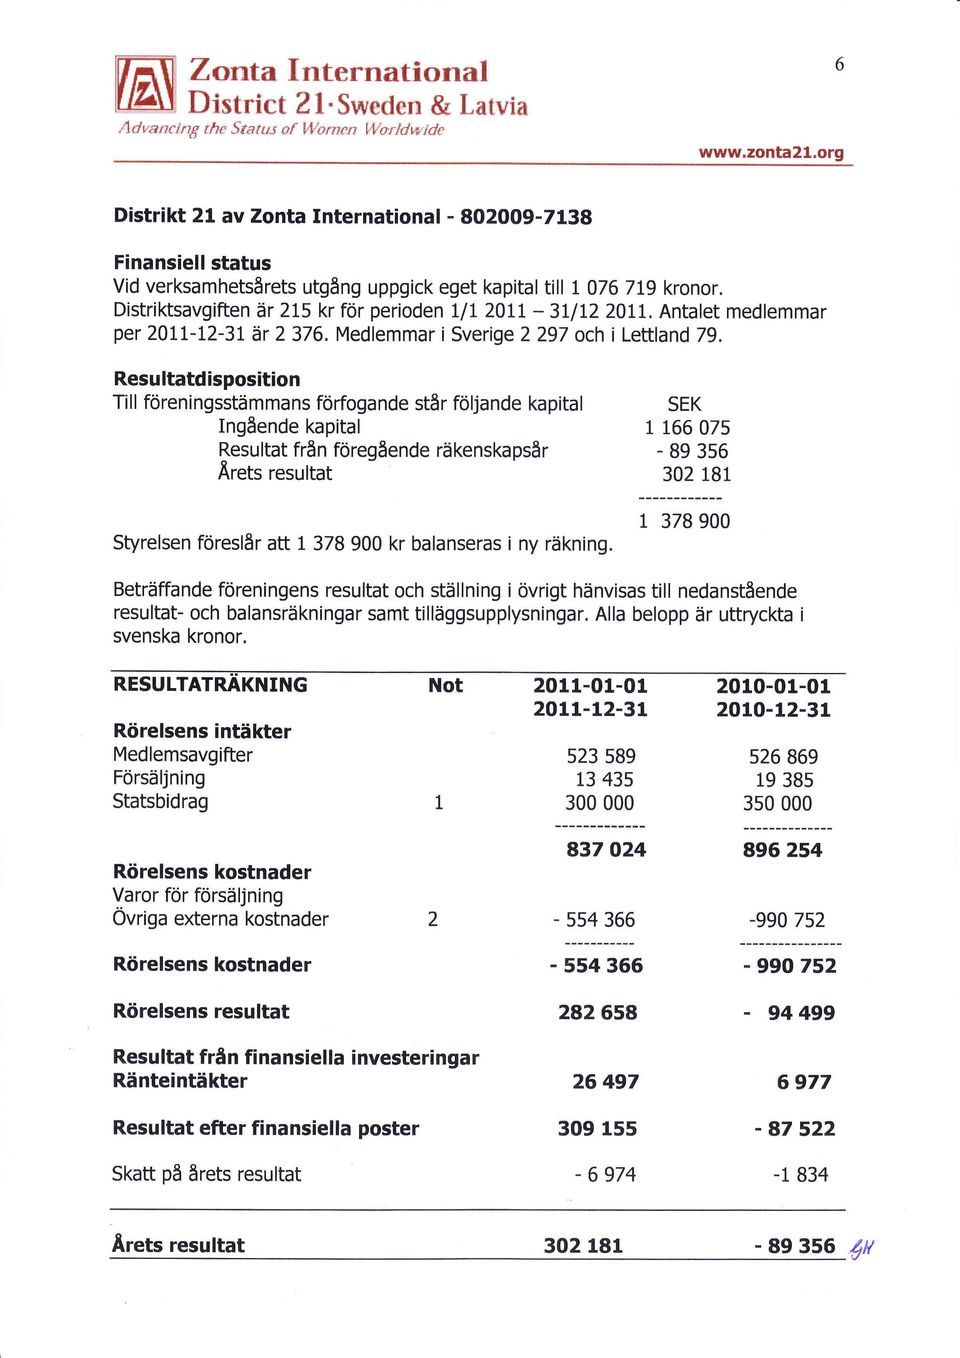 Distriktsavgiften är 215 kr för perioden LIL 20LL - 3tlI2 2011. Antalet medlemmar per 201t-t2-3L är 2 376. Medlemmar i Sverige 2 297 och i Lettland 79.